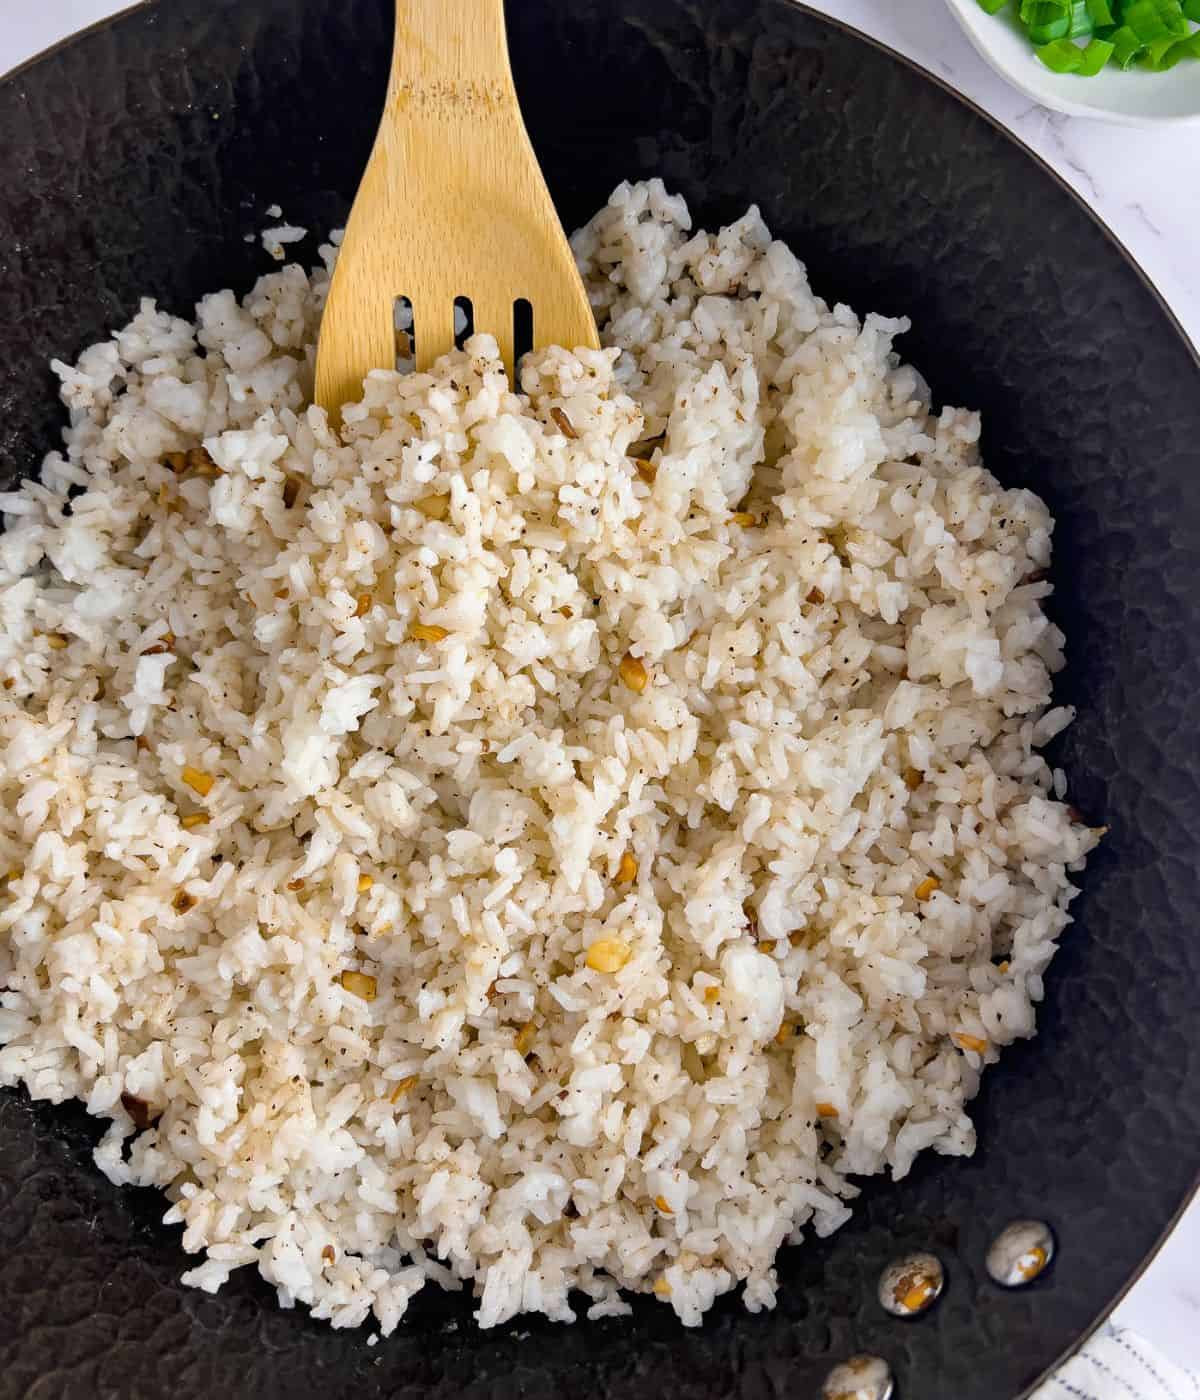 Finish dish of garlic fried rice.